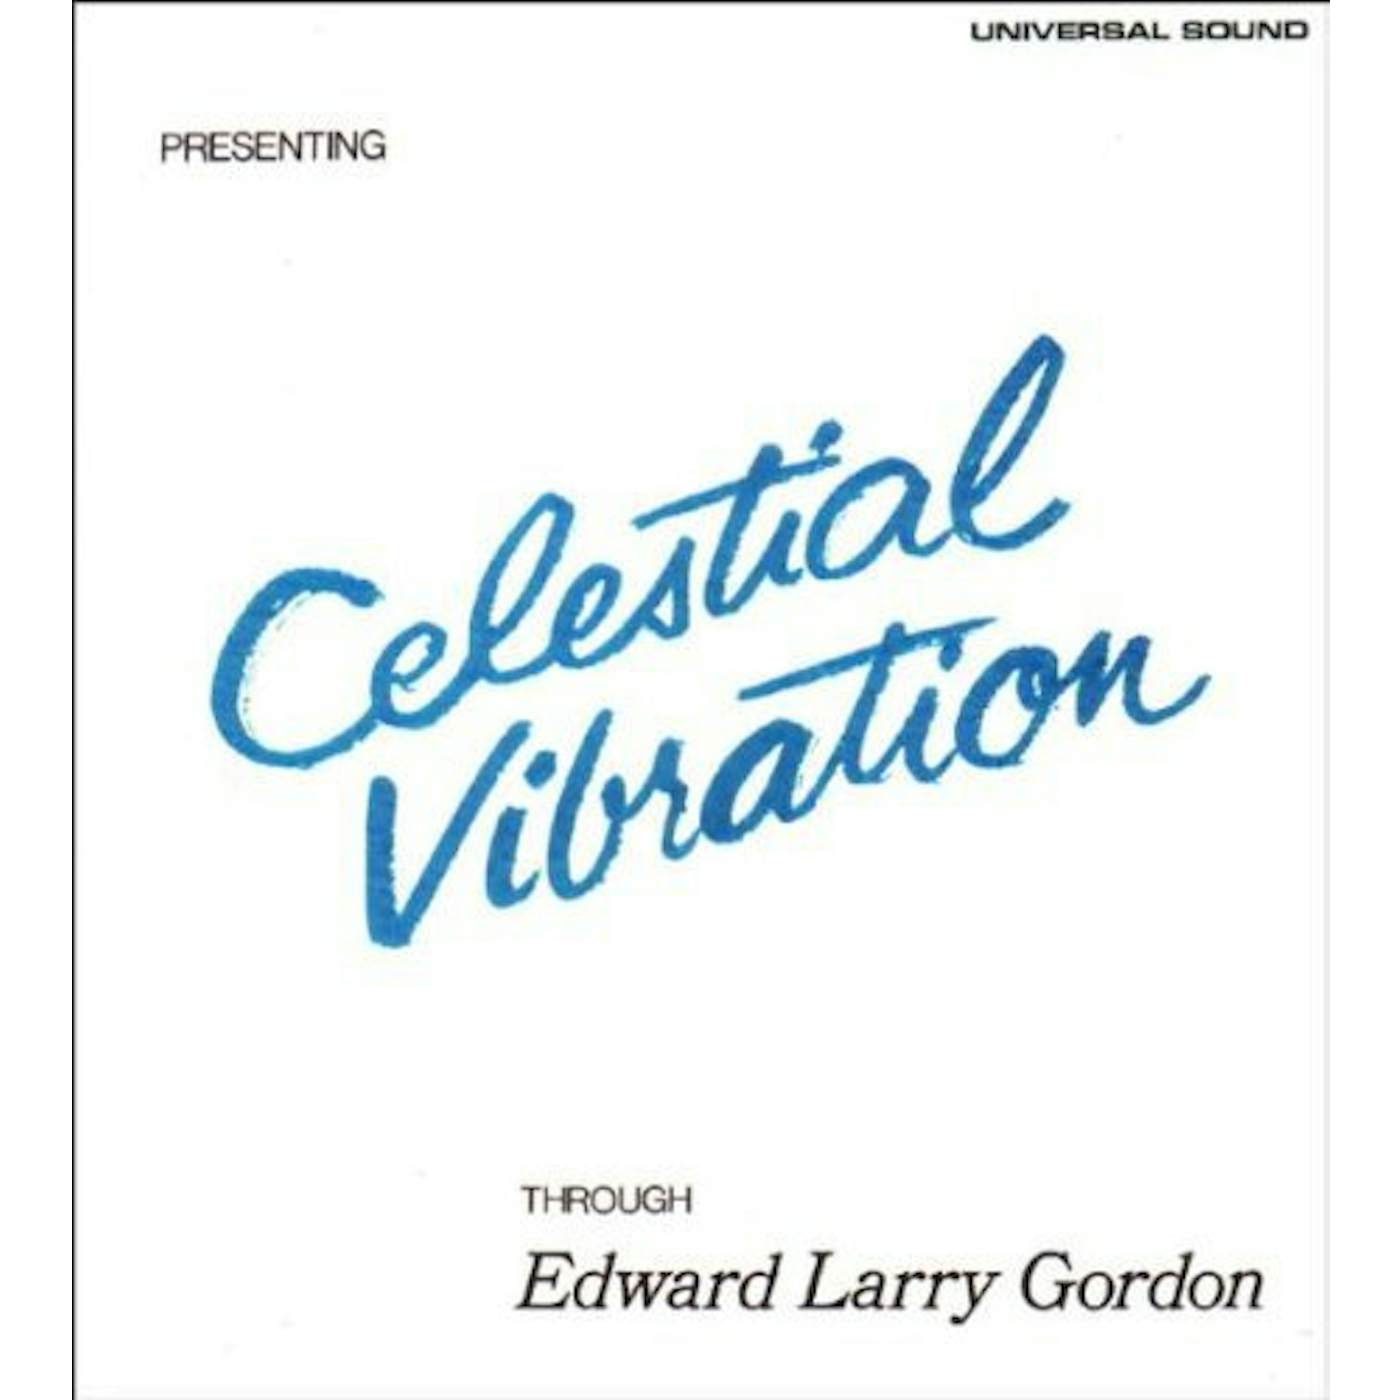 Edward Larry Gordon SOUL JAZZ RECORDS PRESENTS CELESTIAL VIBRATION Vinyl Record